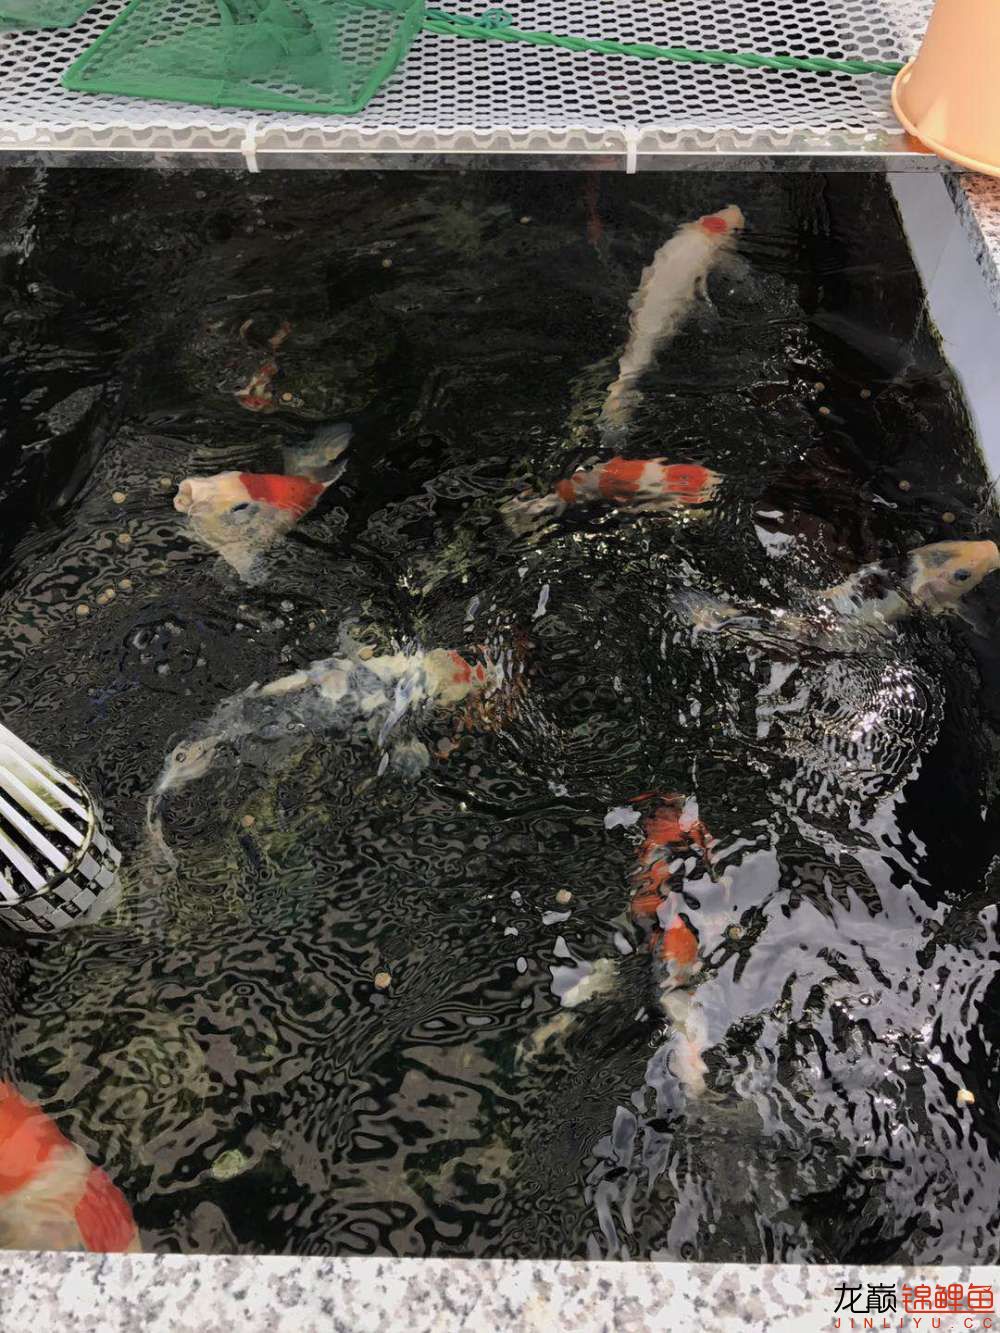 丹东观赏鱼市场加面吸后总算有点一汪清水的感觉了就是密度有点大